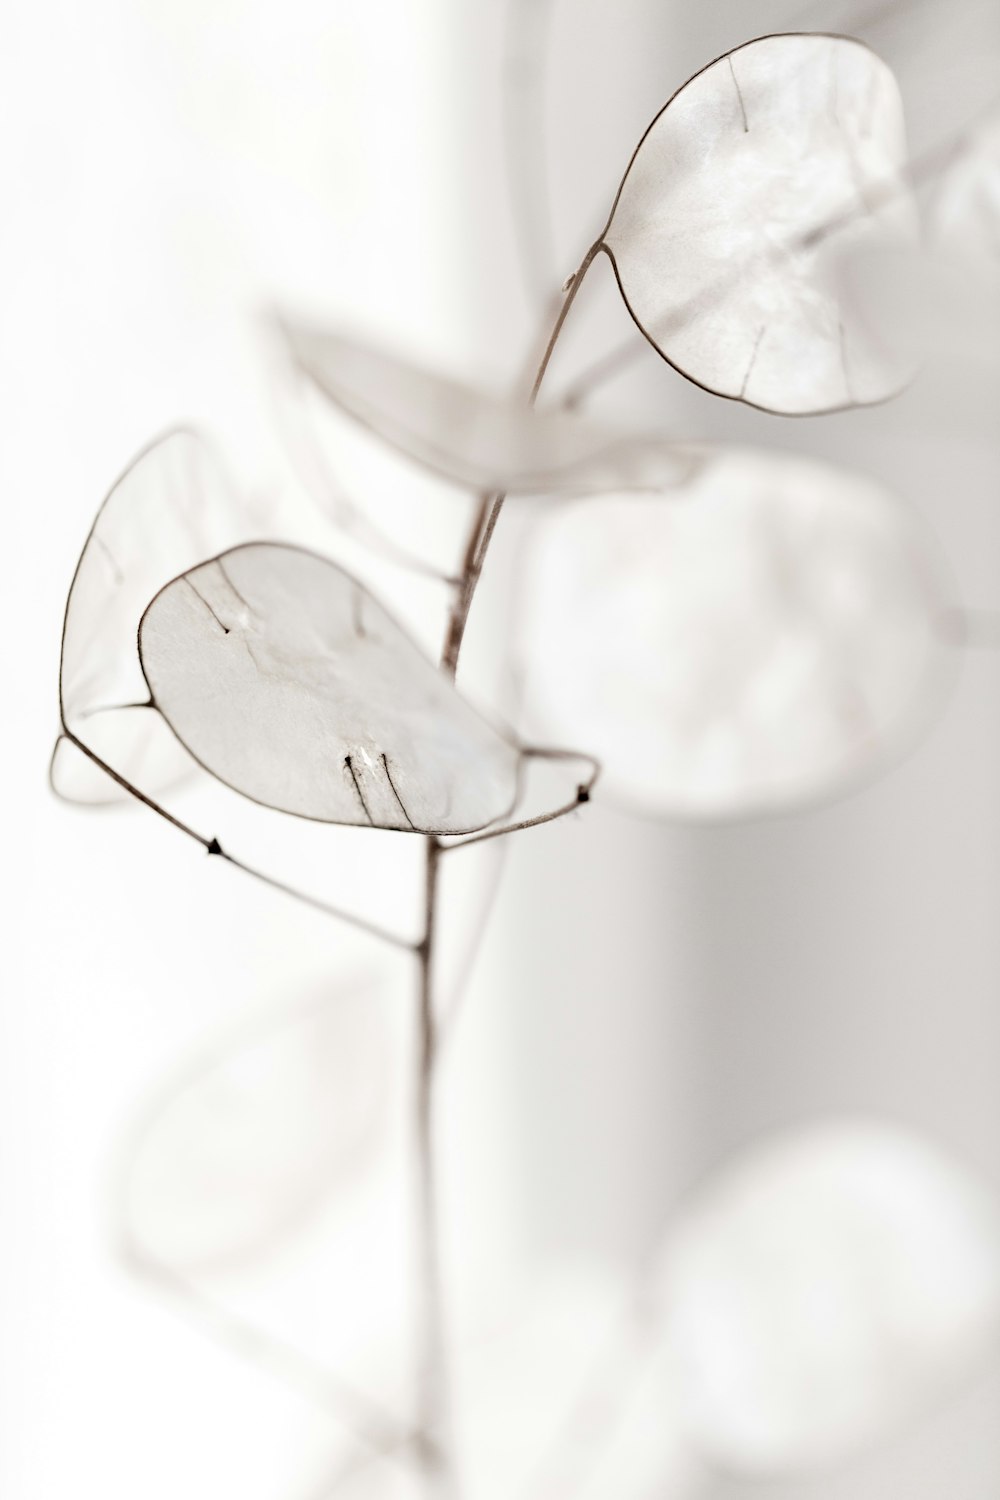 Photographie sélective de fleurs blanches